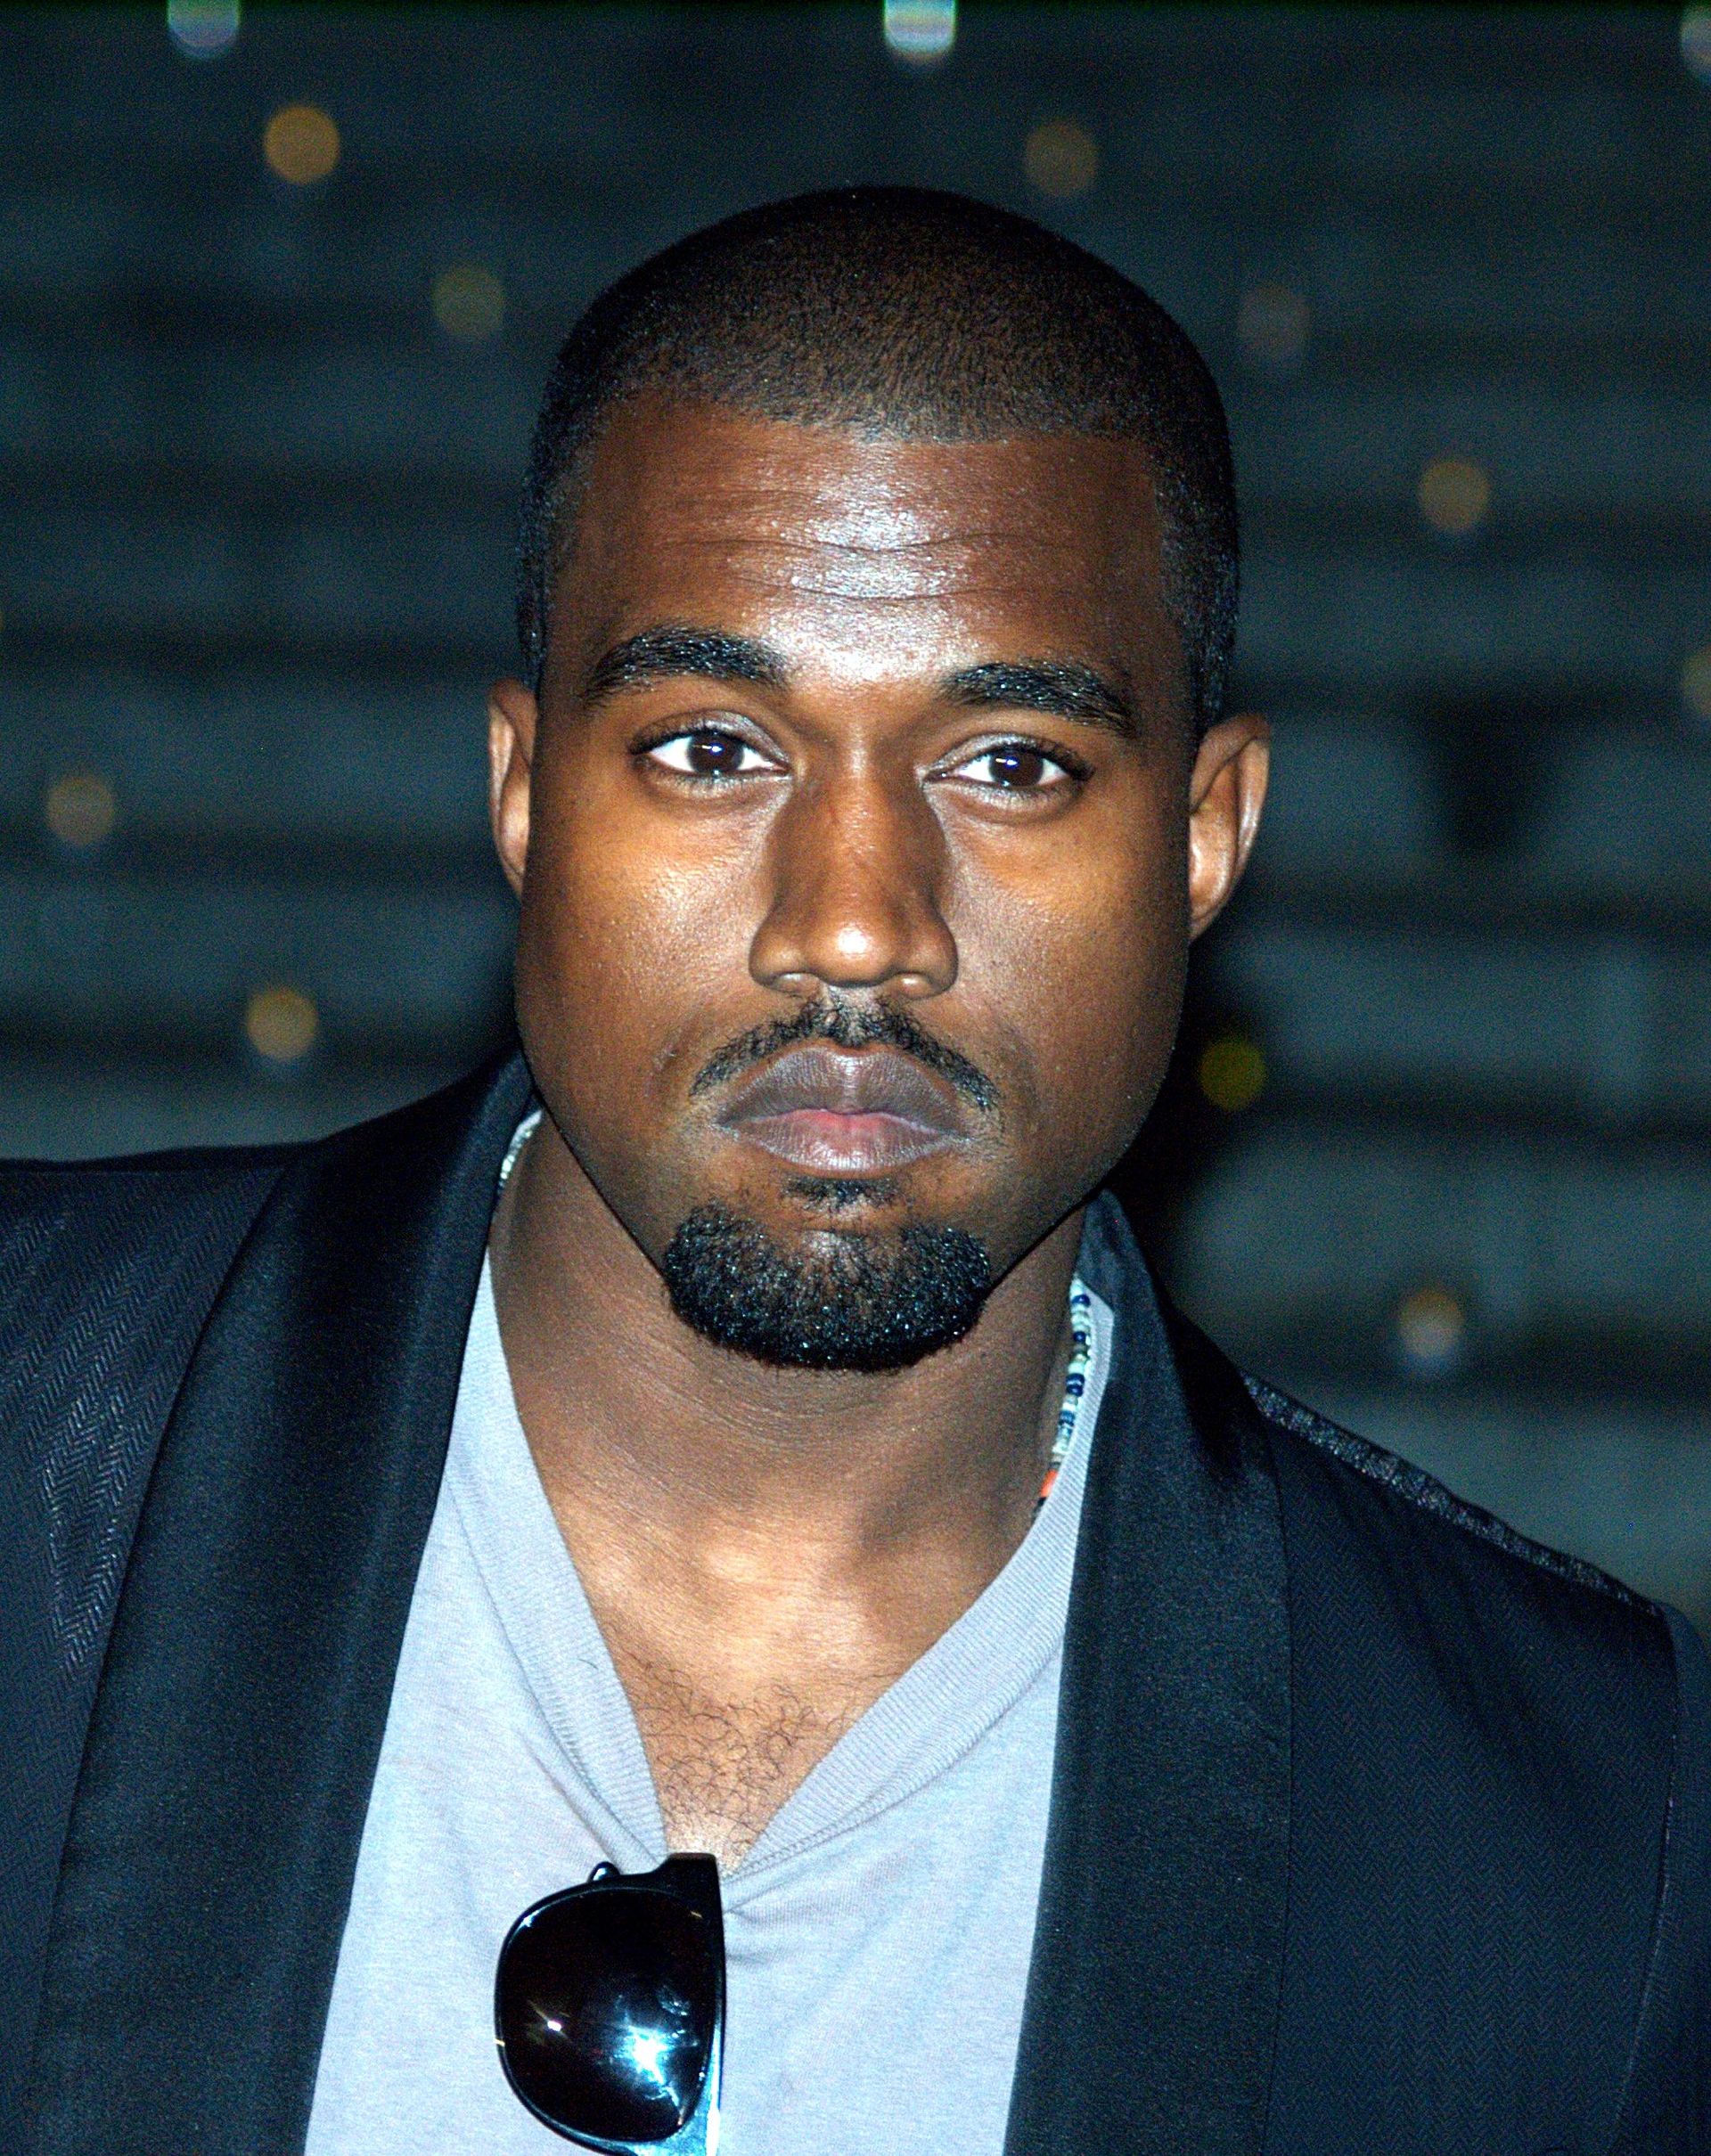 Kanye West courtesy David Shankbone (wikimedia)